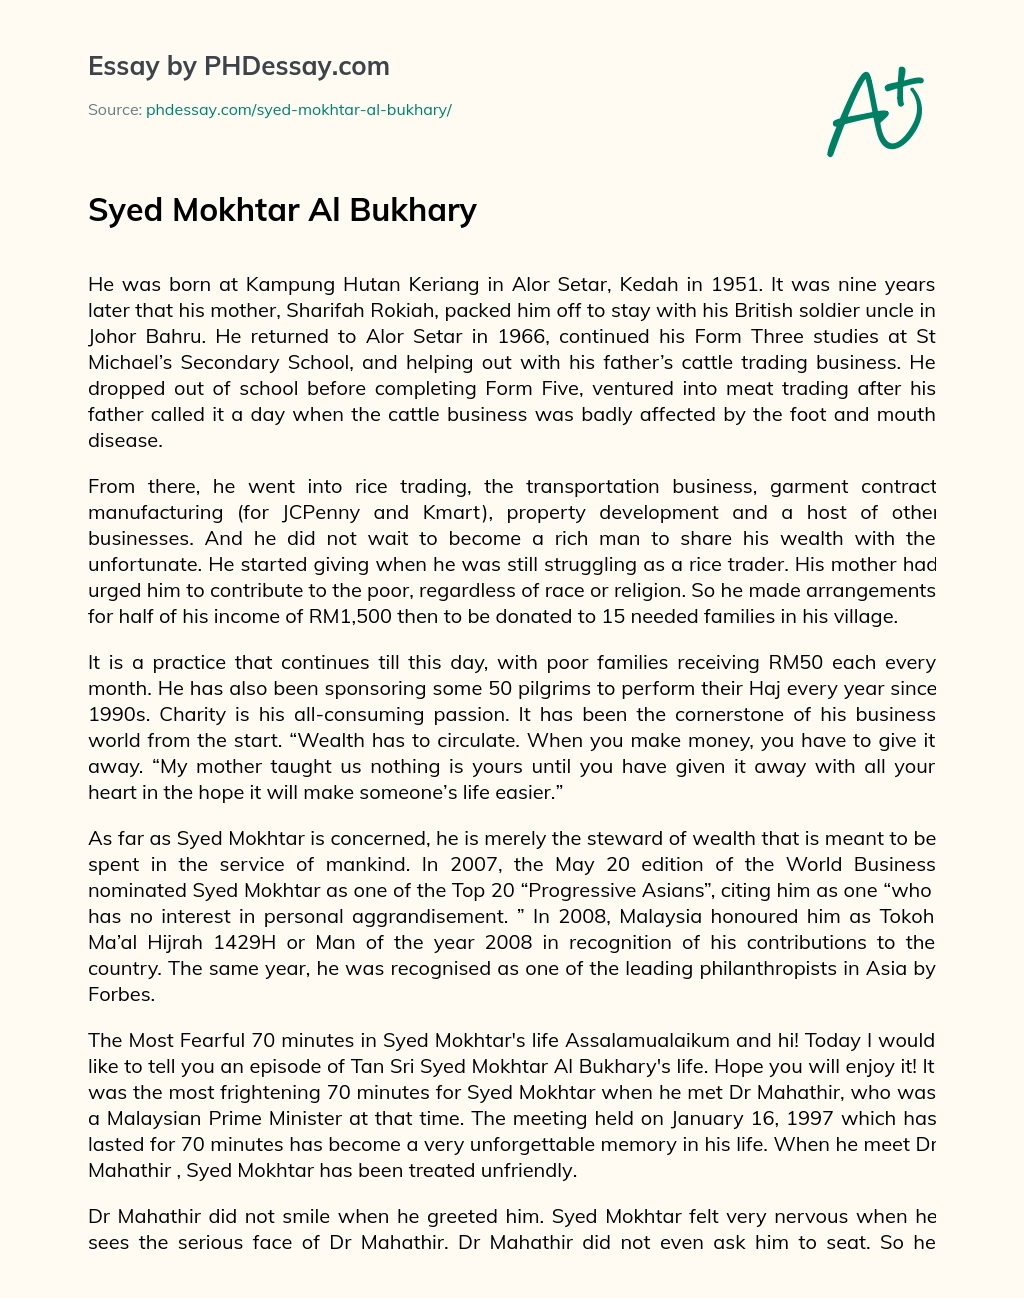 Syed Mokhtar Al Bukhary essay